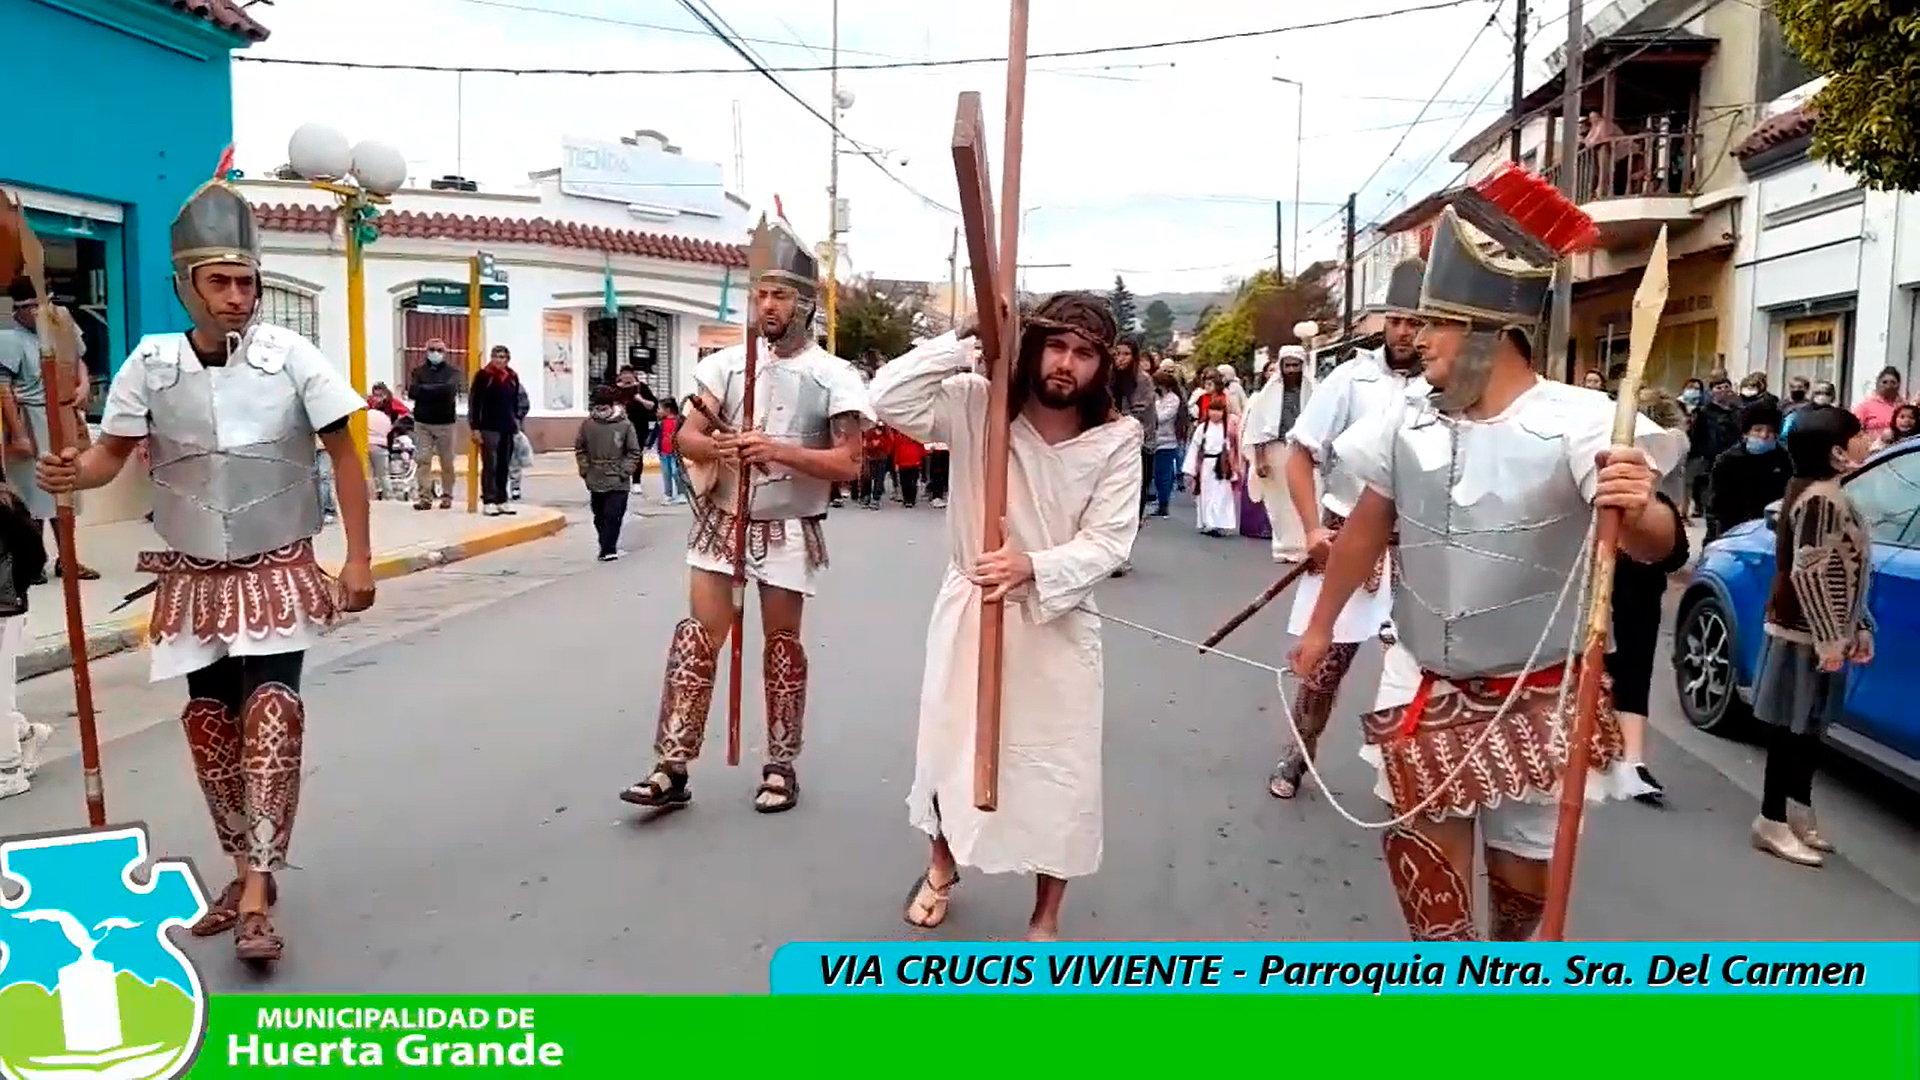 Vía crucis viviente por las calles de Huerta Grande